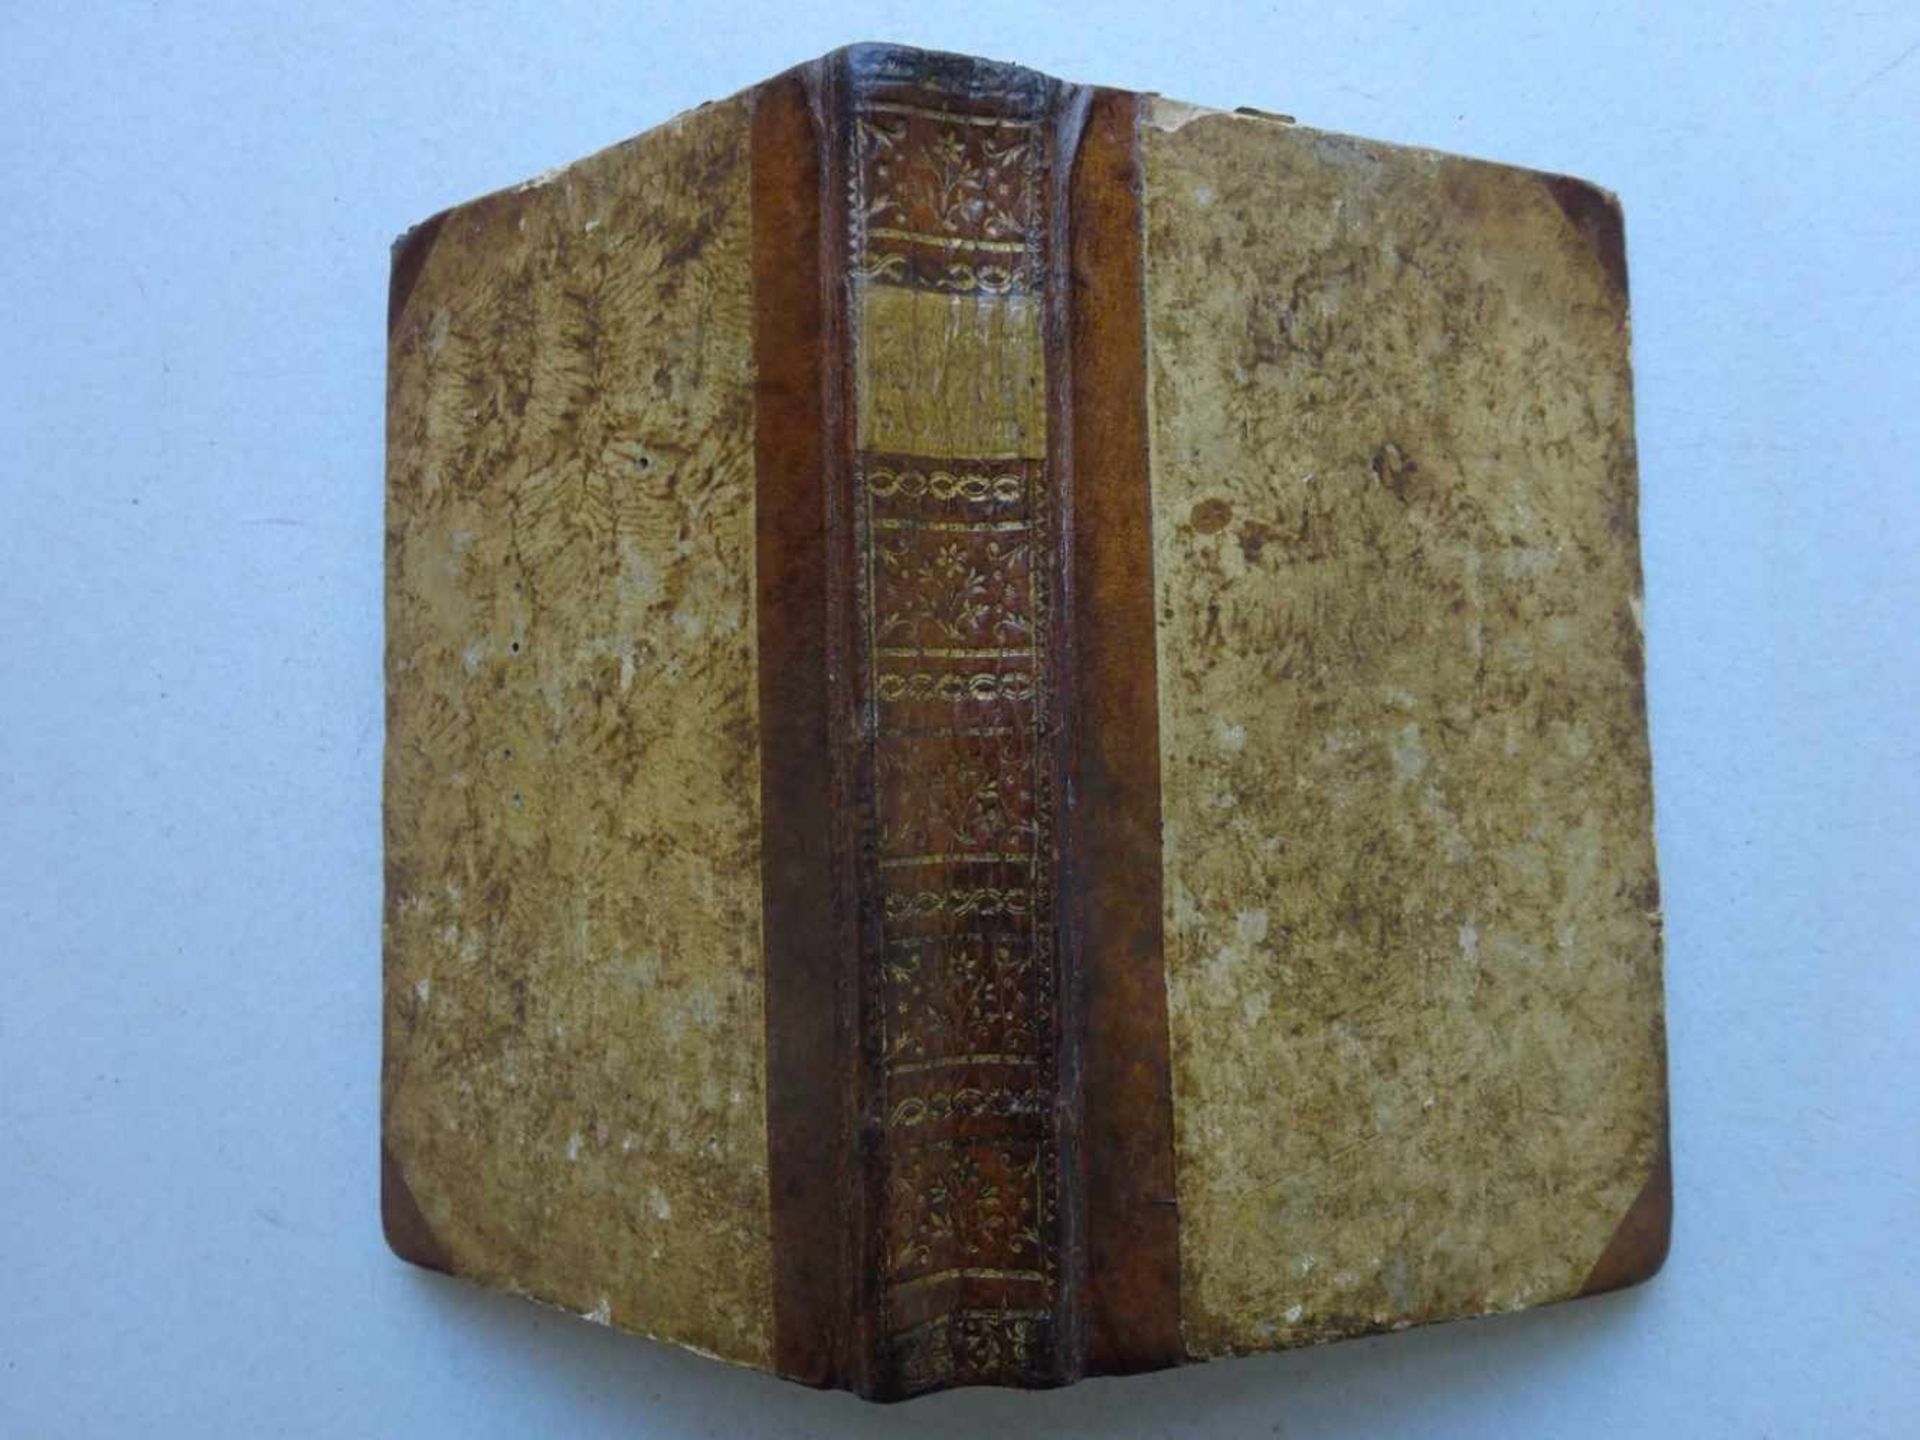 Eckartshausen, K.v.Der Tiger von Bengalen. Ein Buch mit vielen Wahrheiten. München, Lentner, 1789. 3 - Image 4 of 4